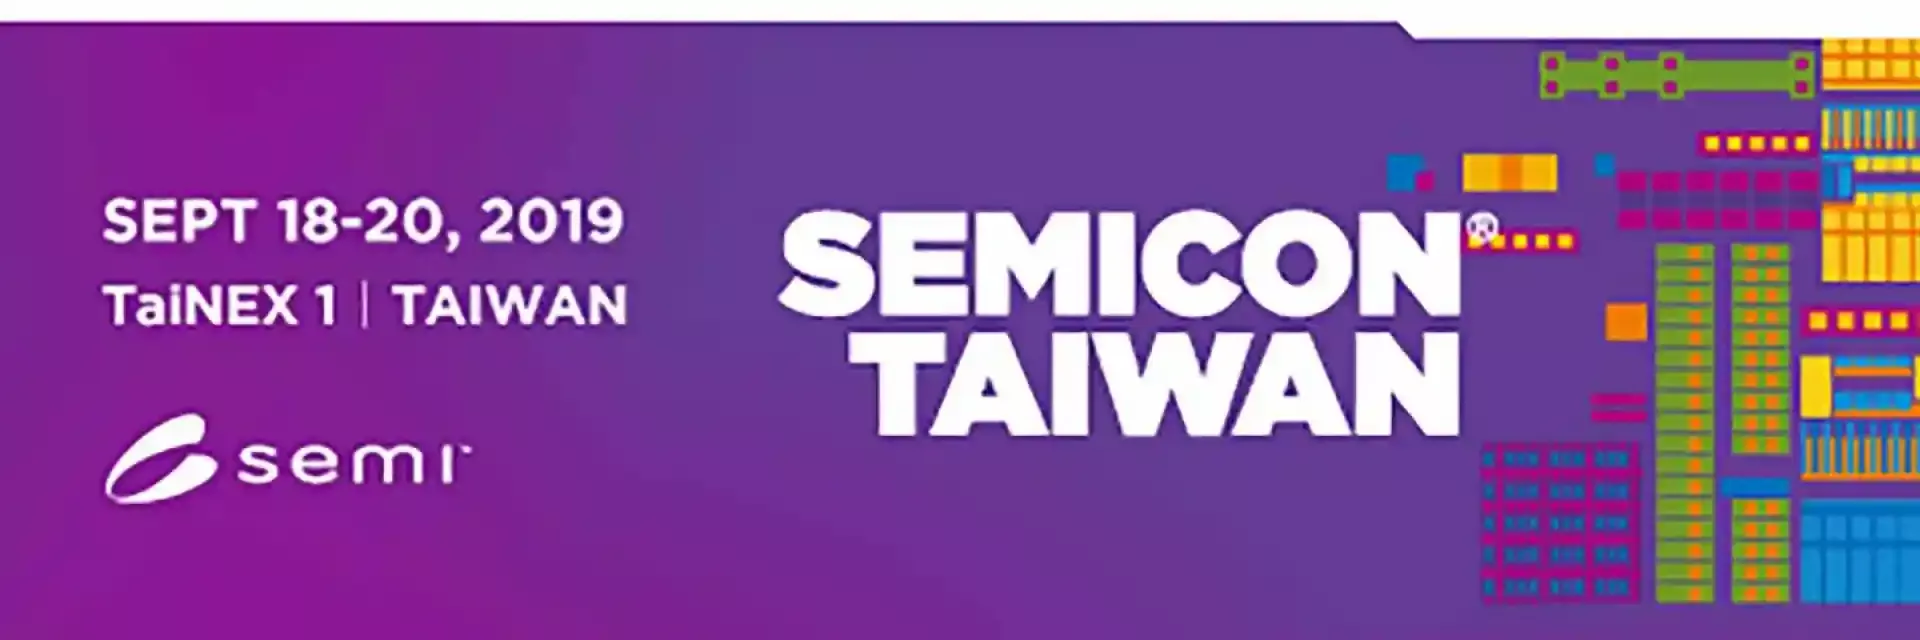 Semicon Taiwan 2019